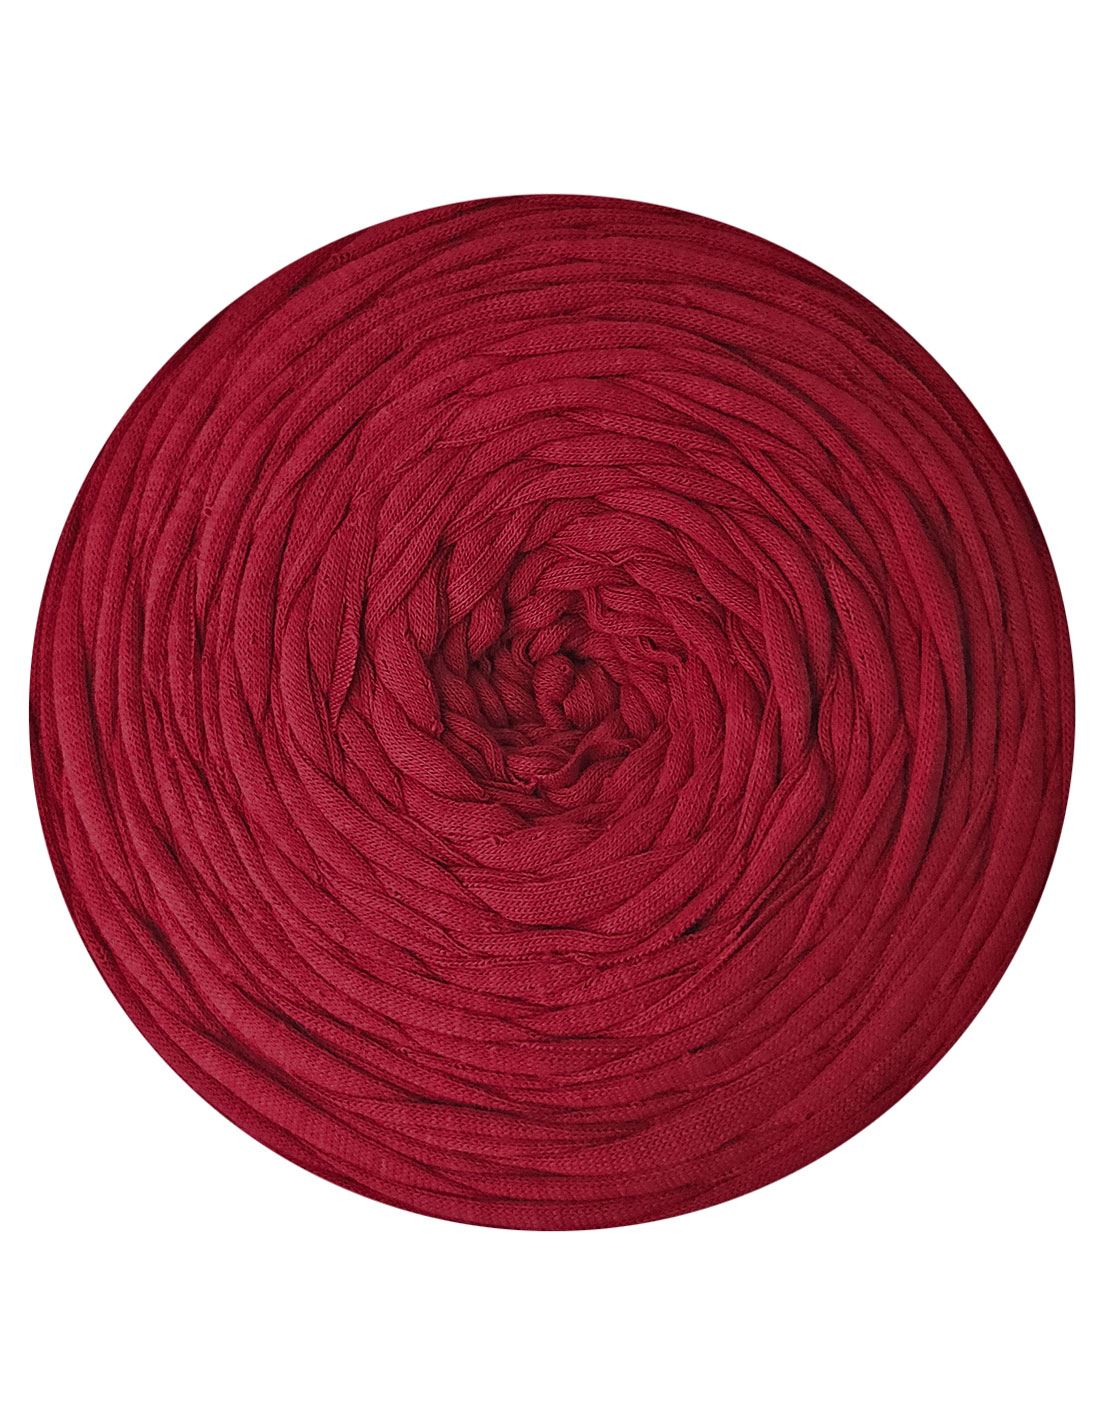 Burgundy red t-shirt yarn by Rescue Yarn (100-120m)